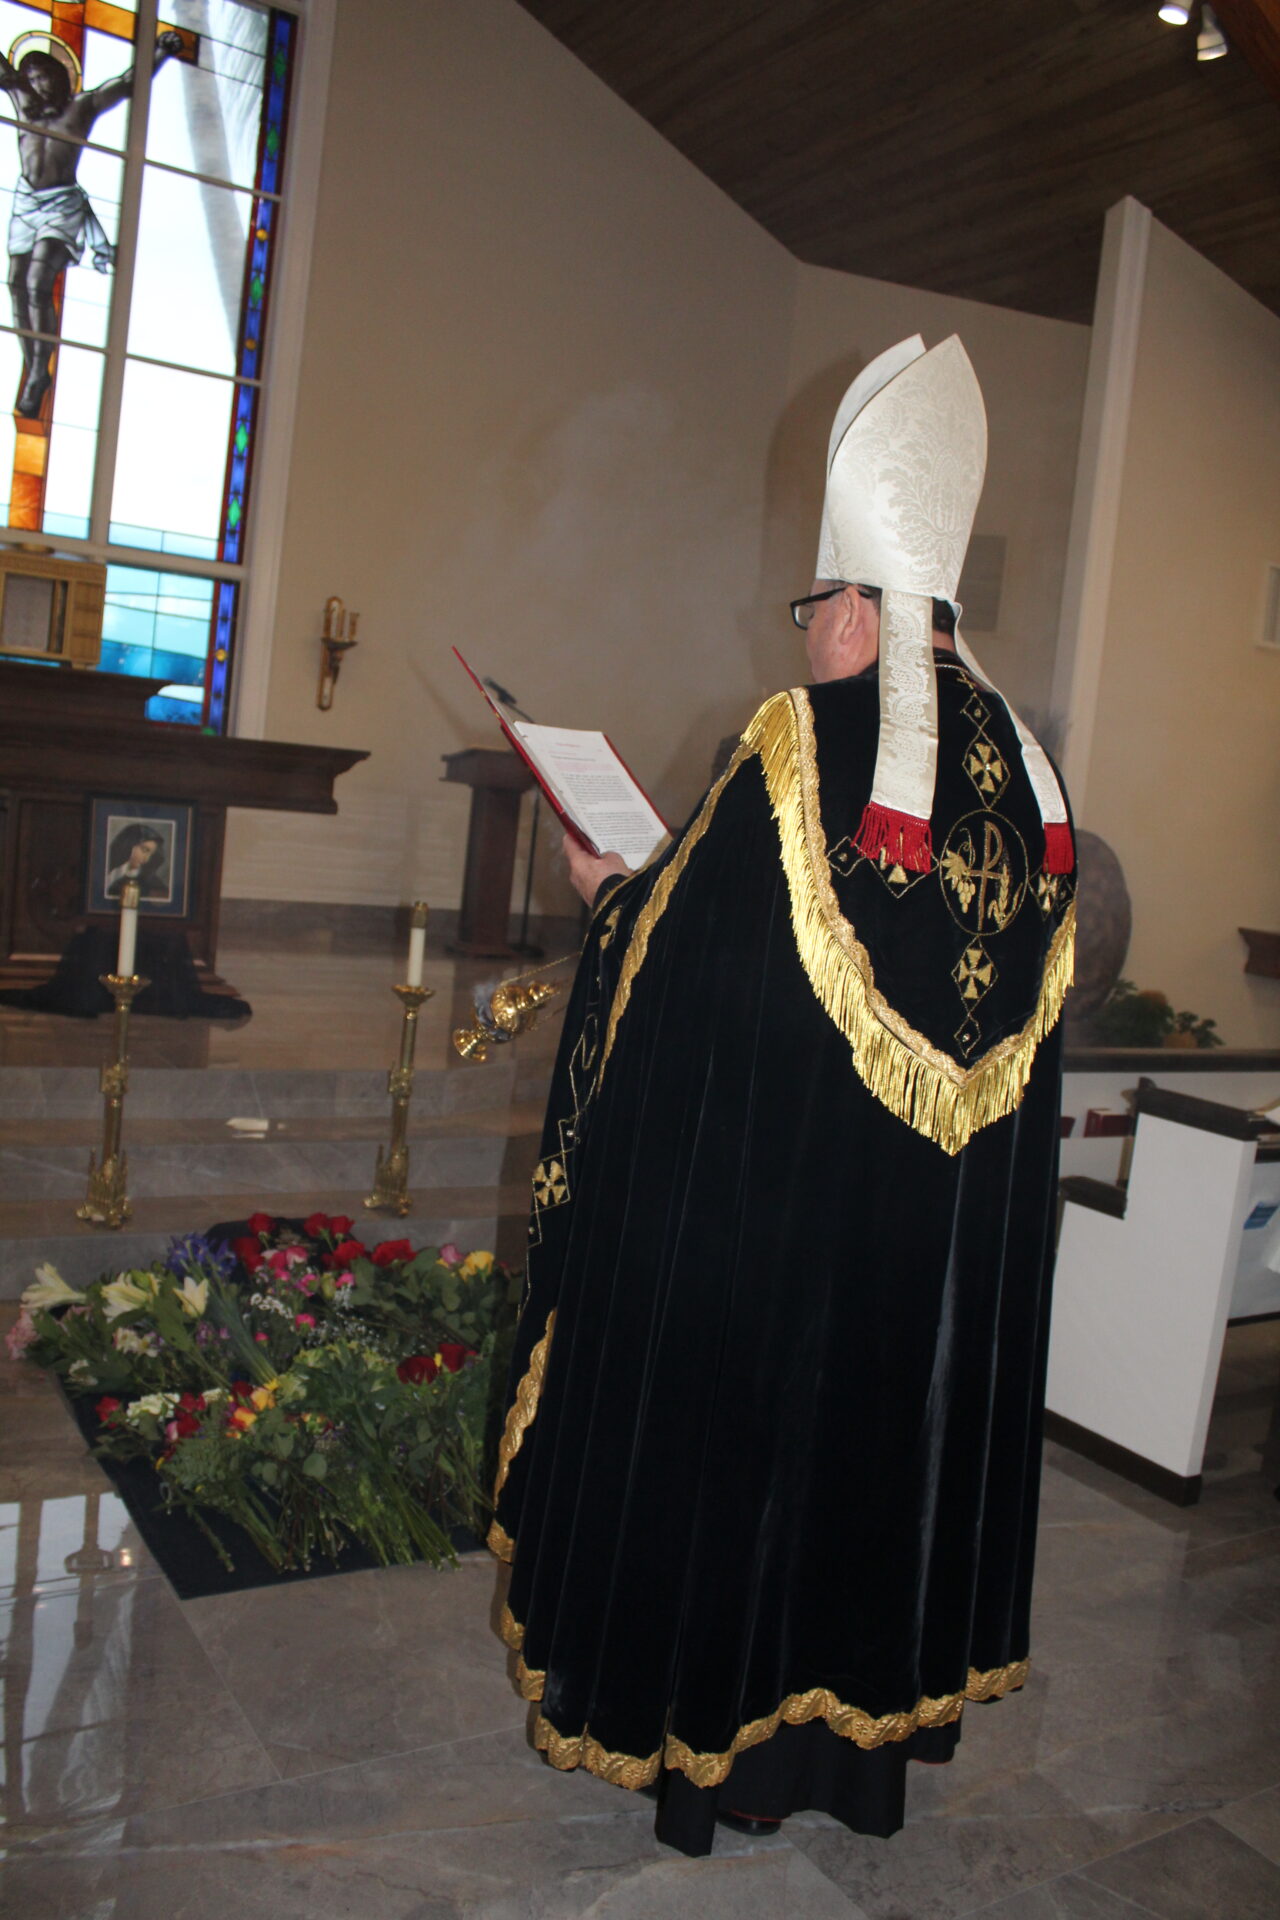 A bishop wearing black best